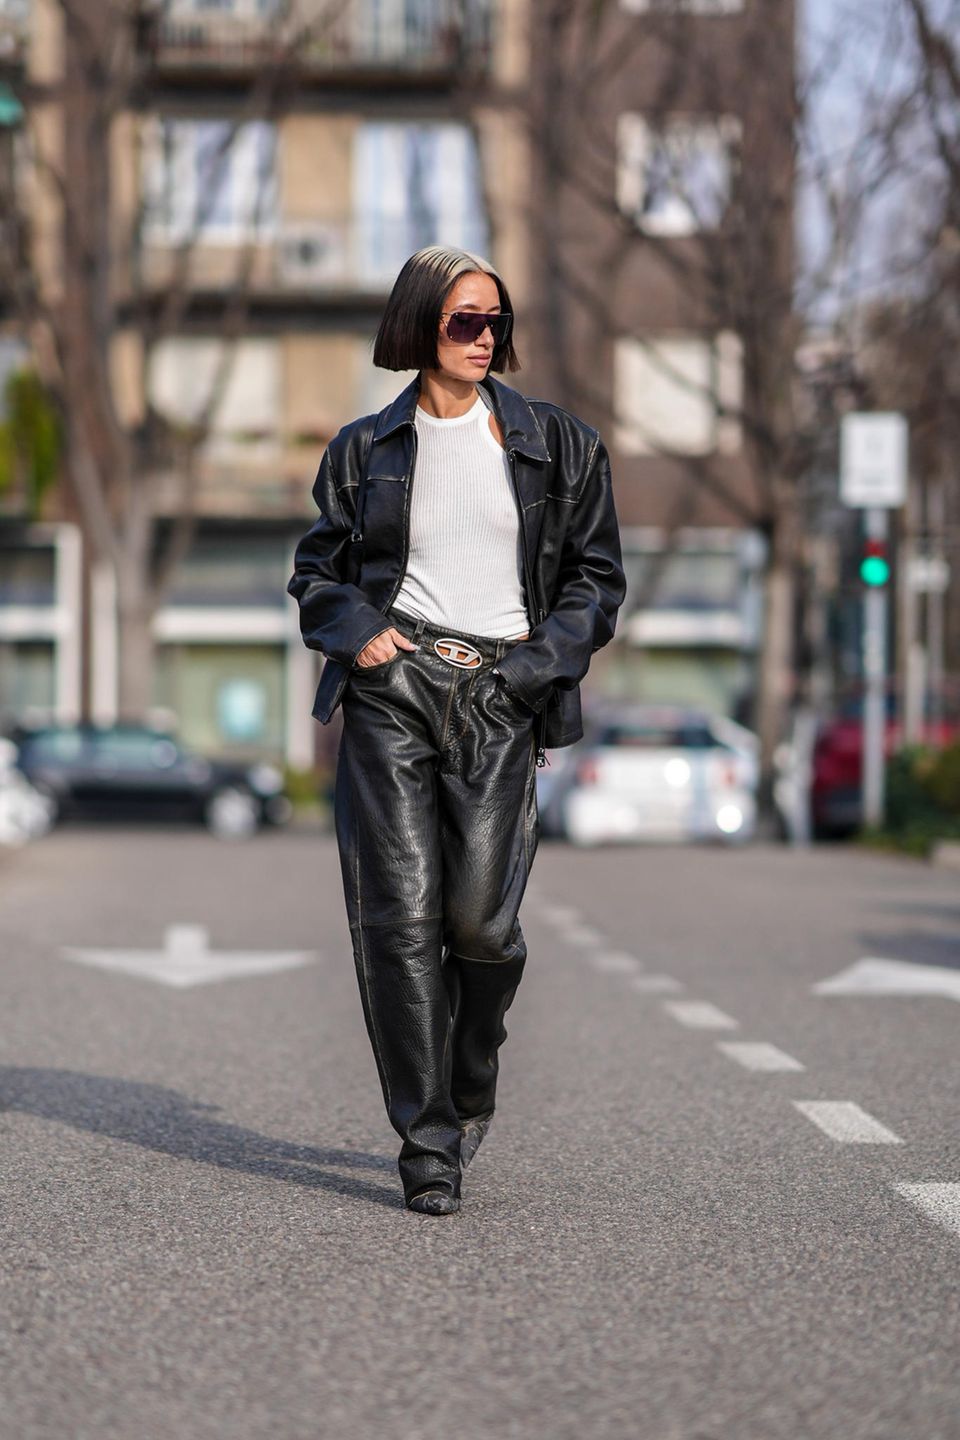 Cooler Gang, noch coolerer Look! Alexandra Guerain schlendert in einem Lederoutfit und einem weißen Tanktop durch Mailand. Selbst ihre Haare matchen den Look – gewollt oder nicht, es passt perfekt. 